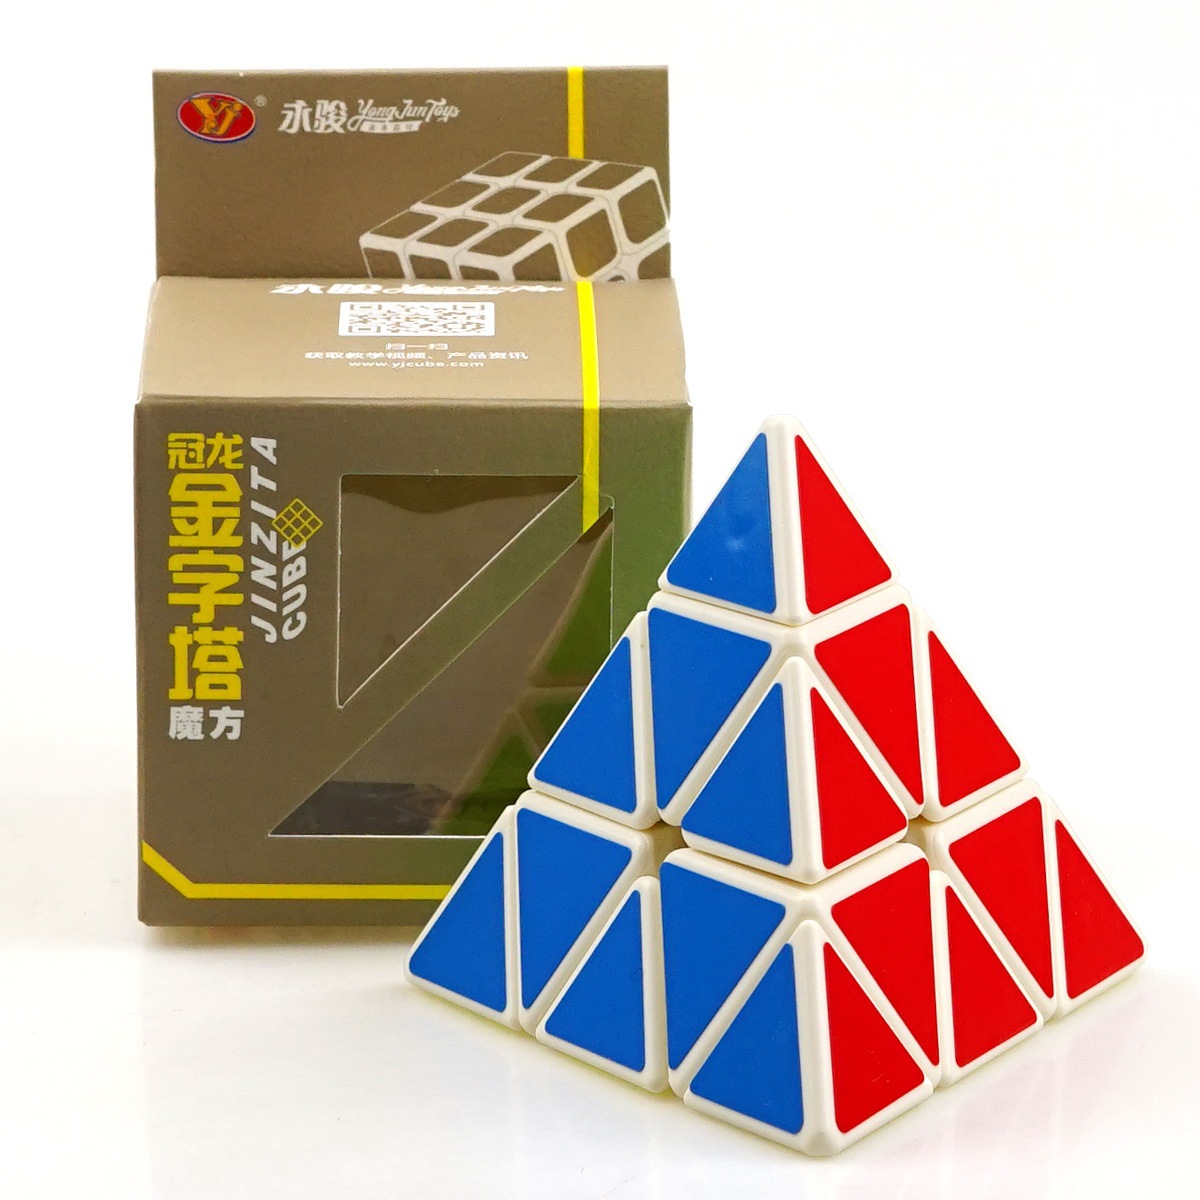 Đồ chơi Rubik 3x3 Qiyi Sail W Rubic 3 Tầng Khối Tam Giác Ma Thuật